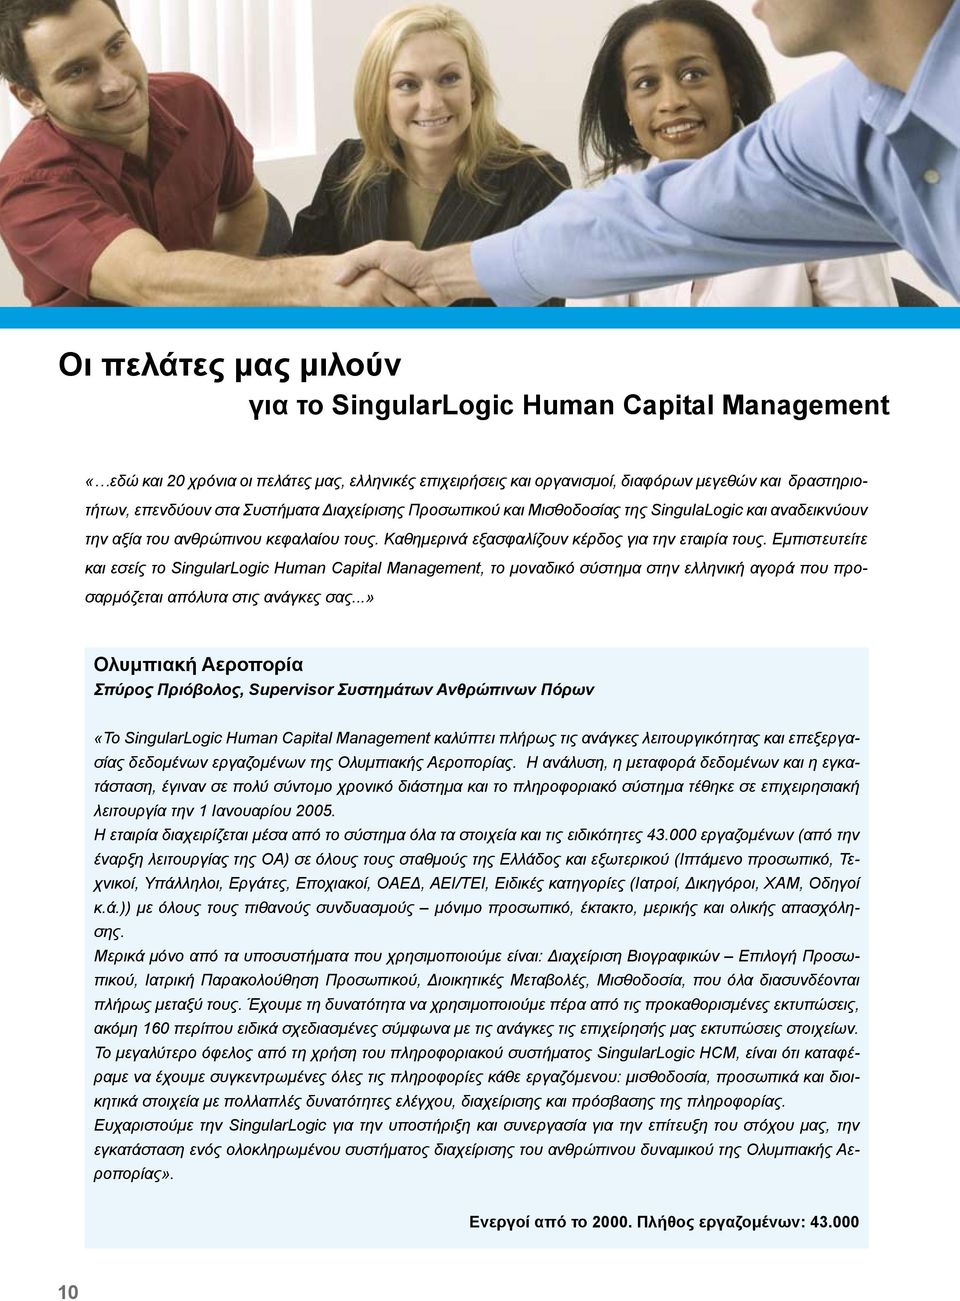 Εμπιστευτείτε και εσείς το SingularLogic Human Capital Management, το μοναδικό σύστημα στην ελληνική αγορά που προσαρμόζεται απόλυτα στις ανάγκες σας.